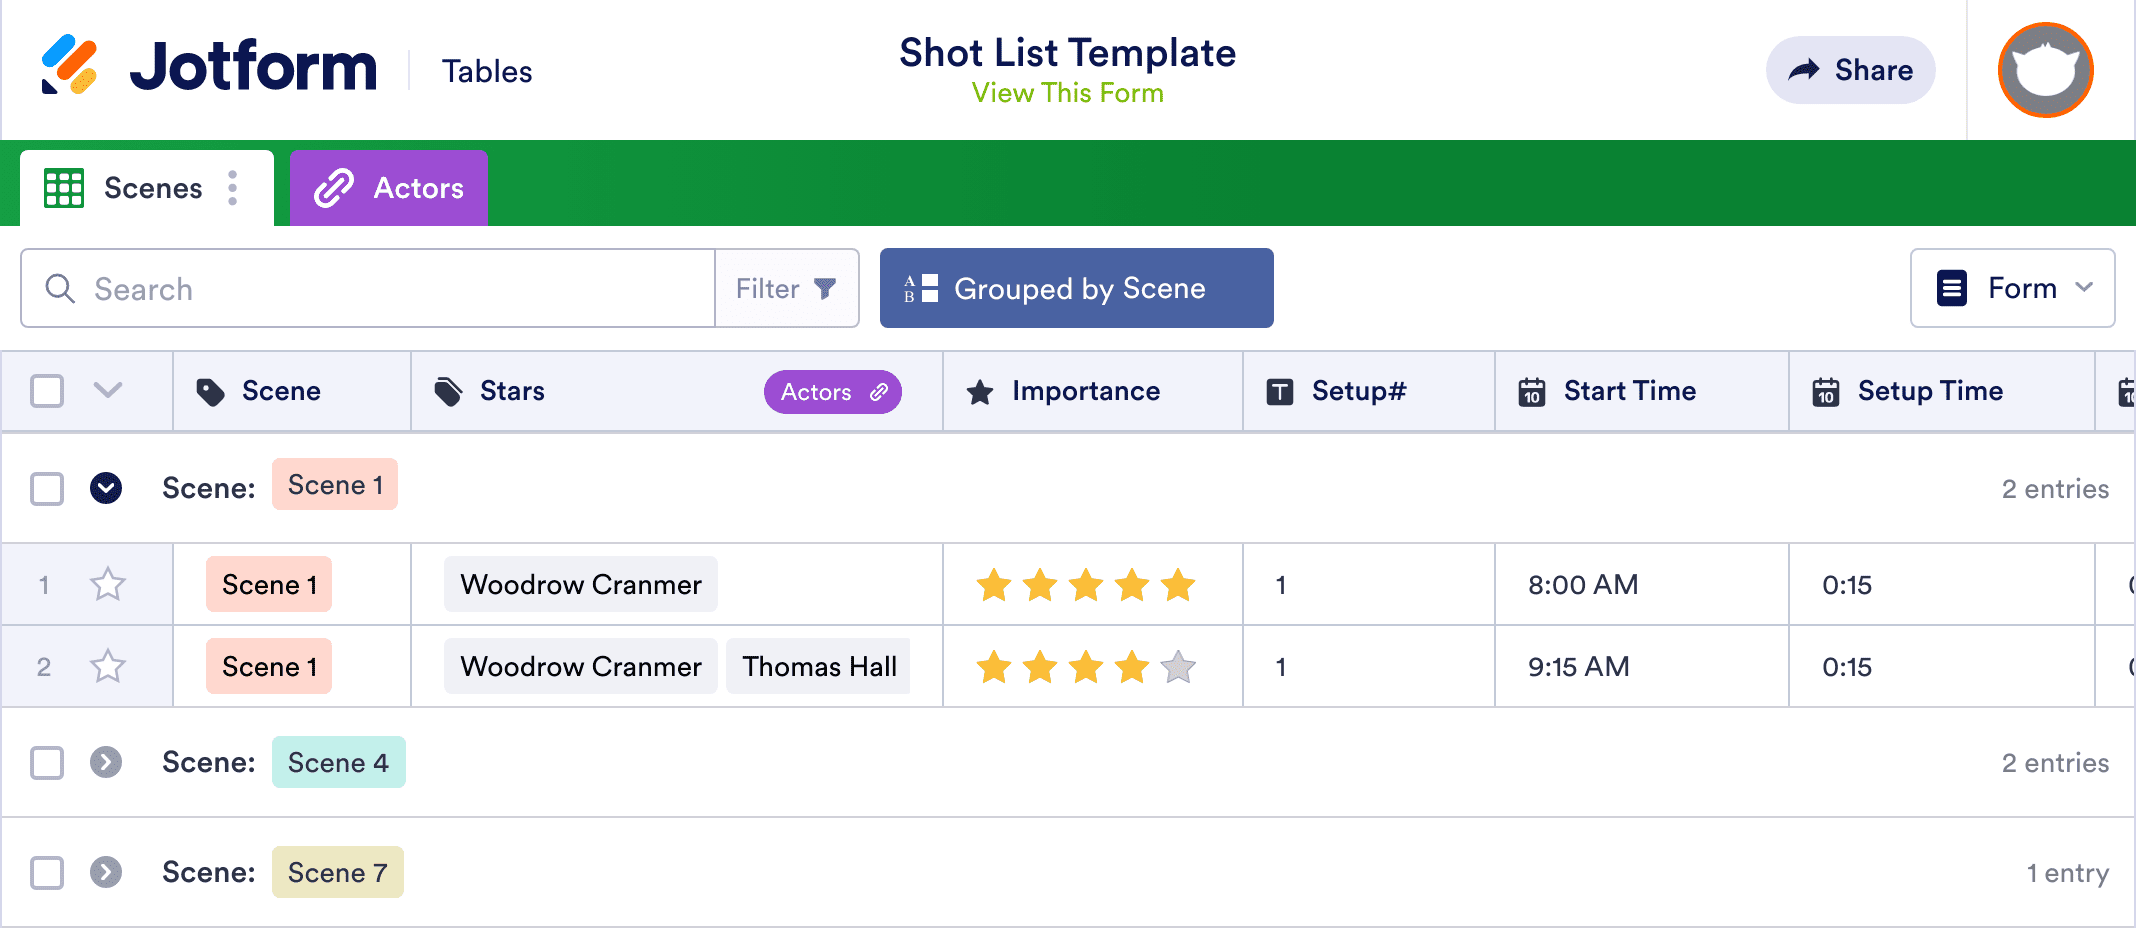 Shot List Template